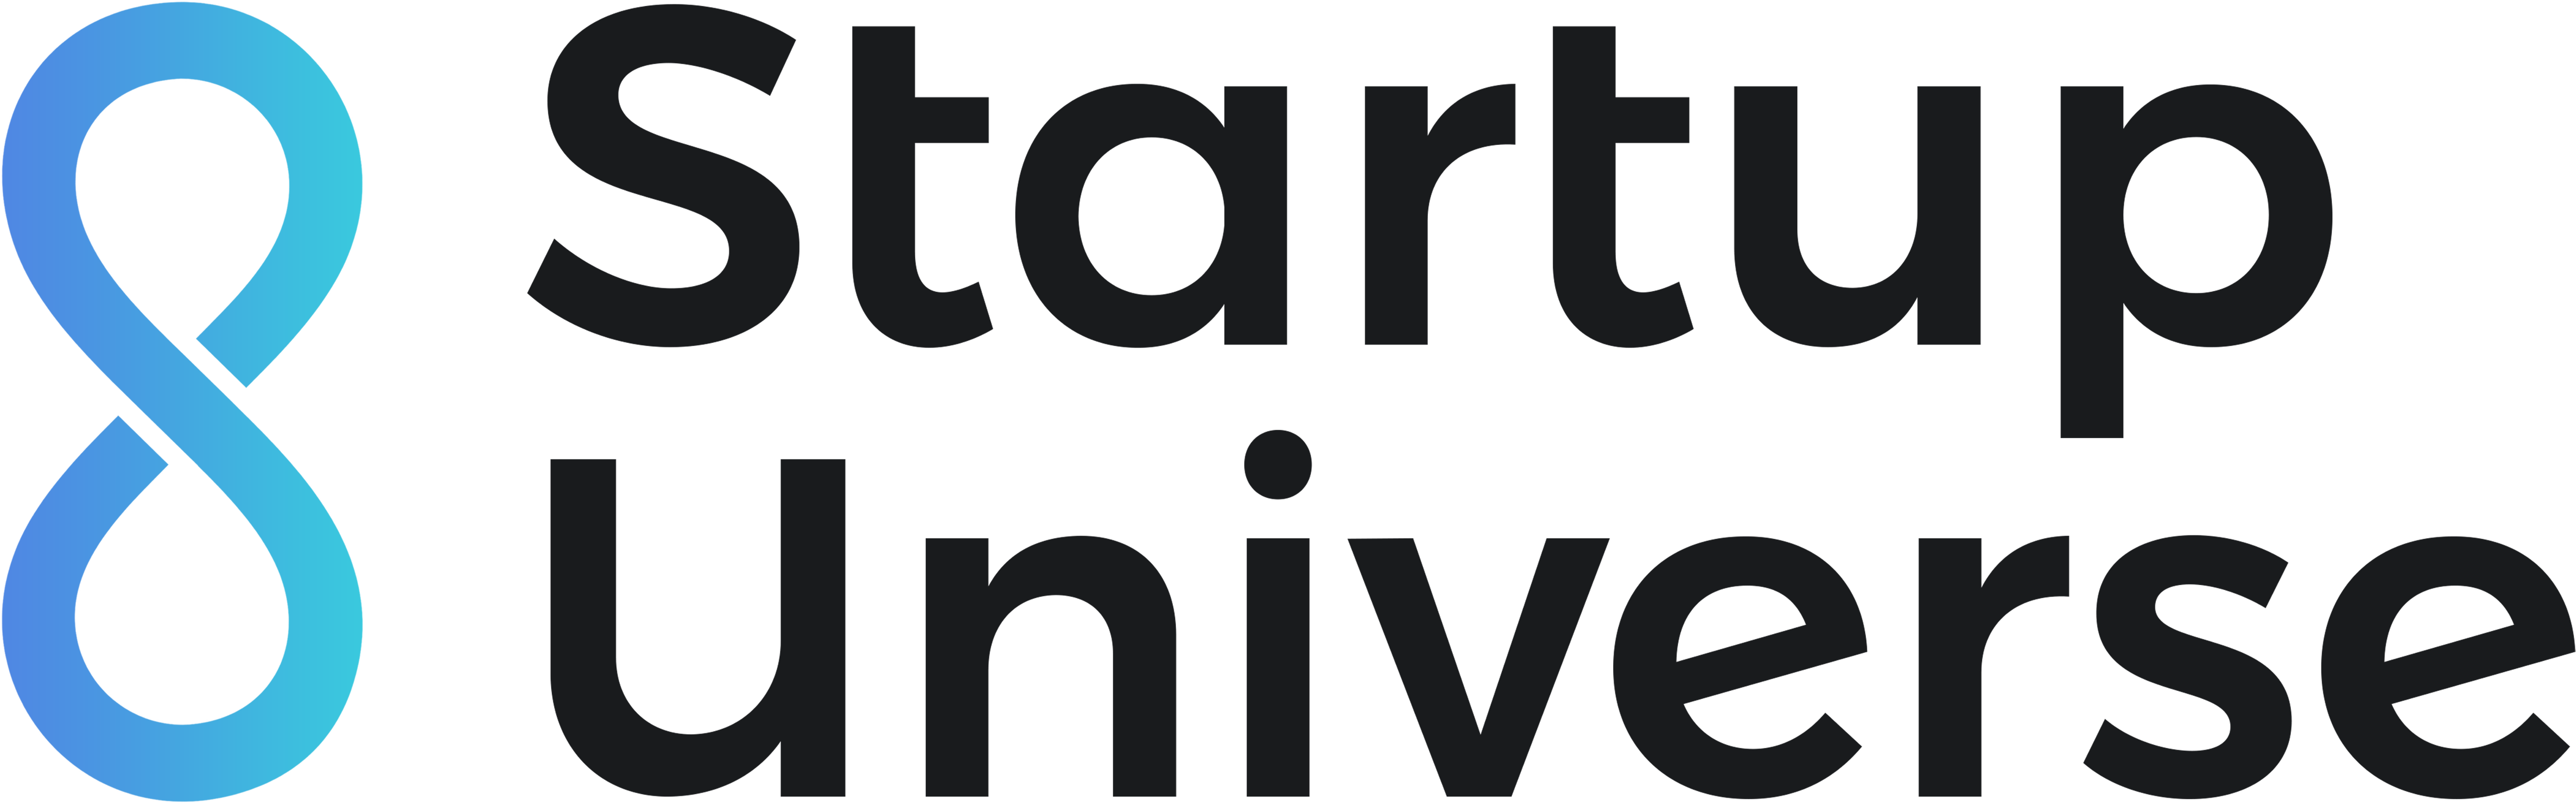 Startup Universe black logo